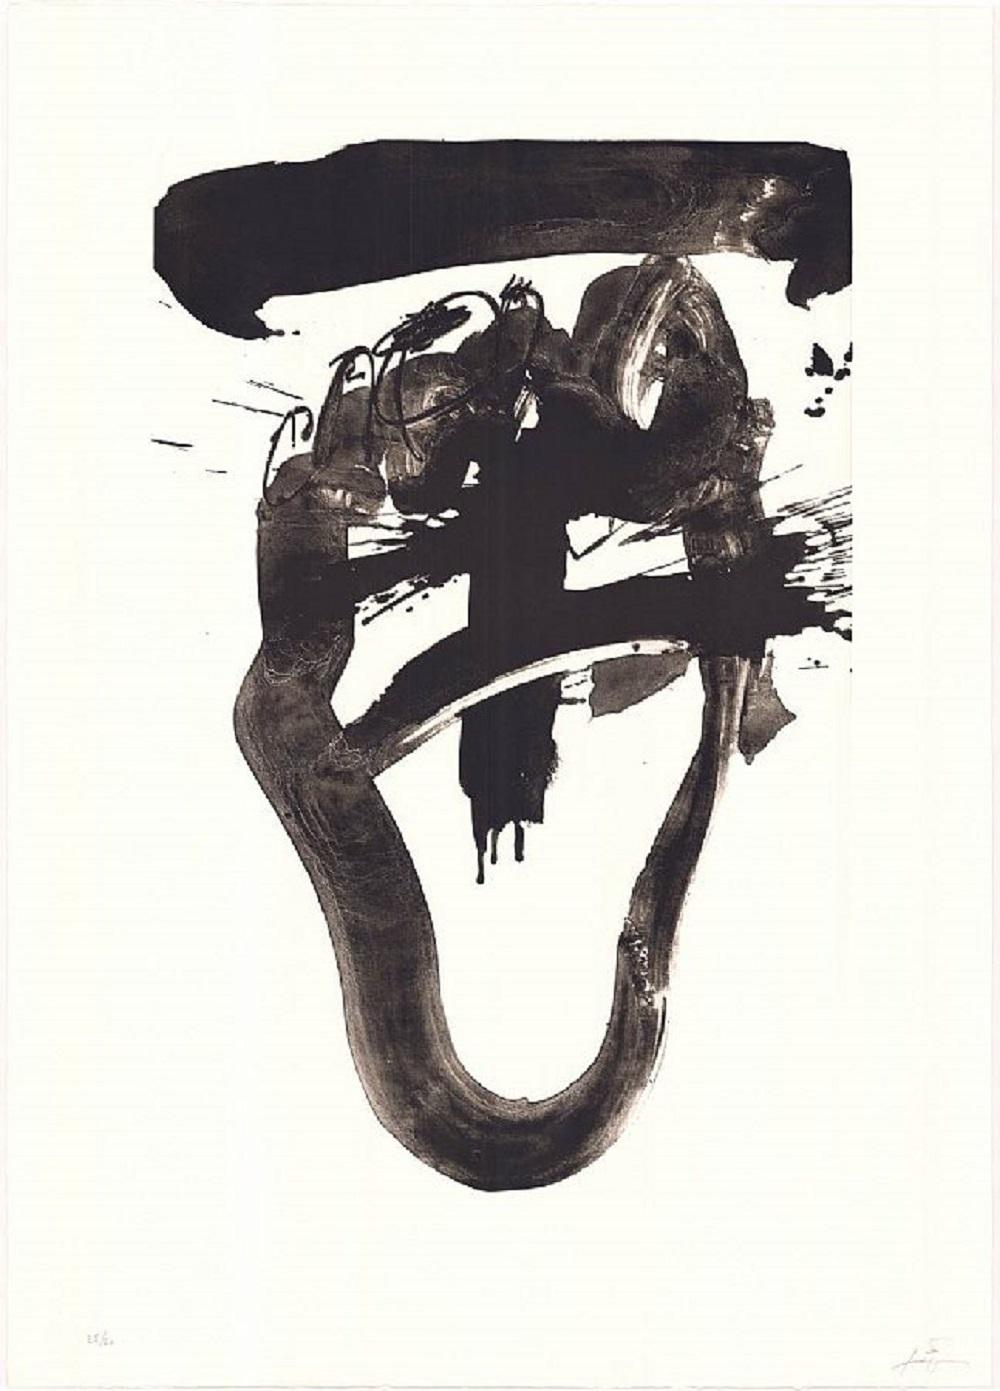 Abstract Print Antoni Tàpies - Lithographie d'artiste espagnol signée, édition limitée, numérotée n23